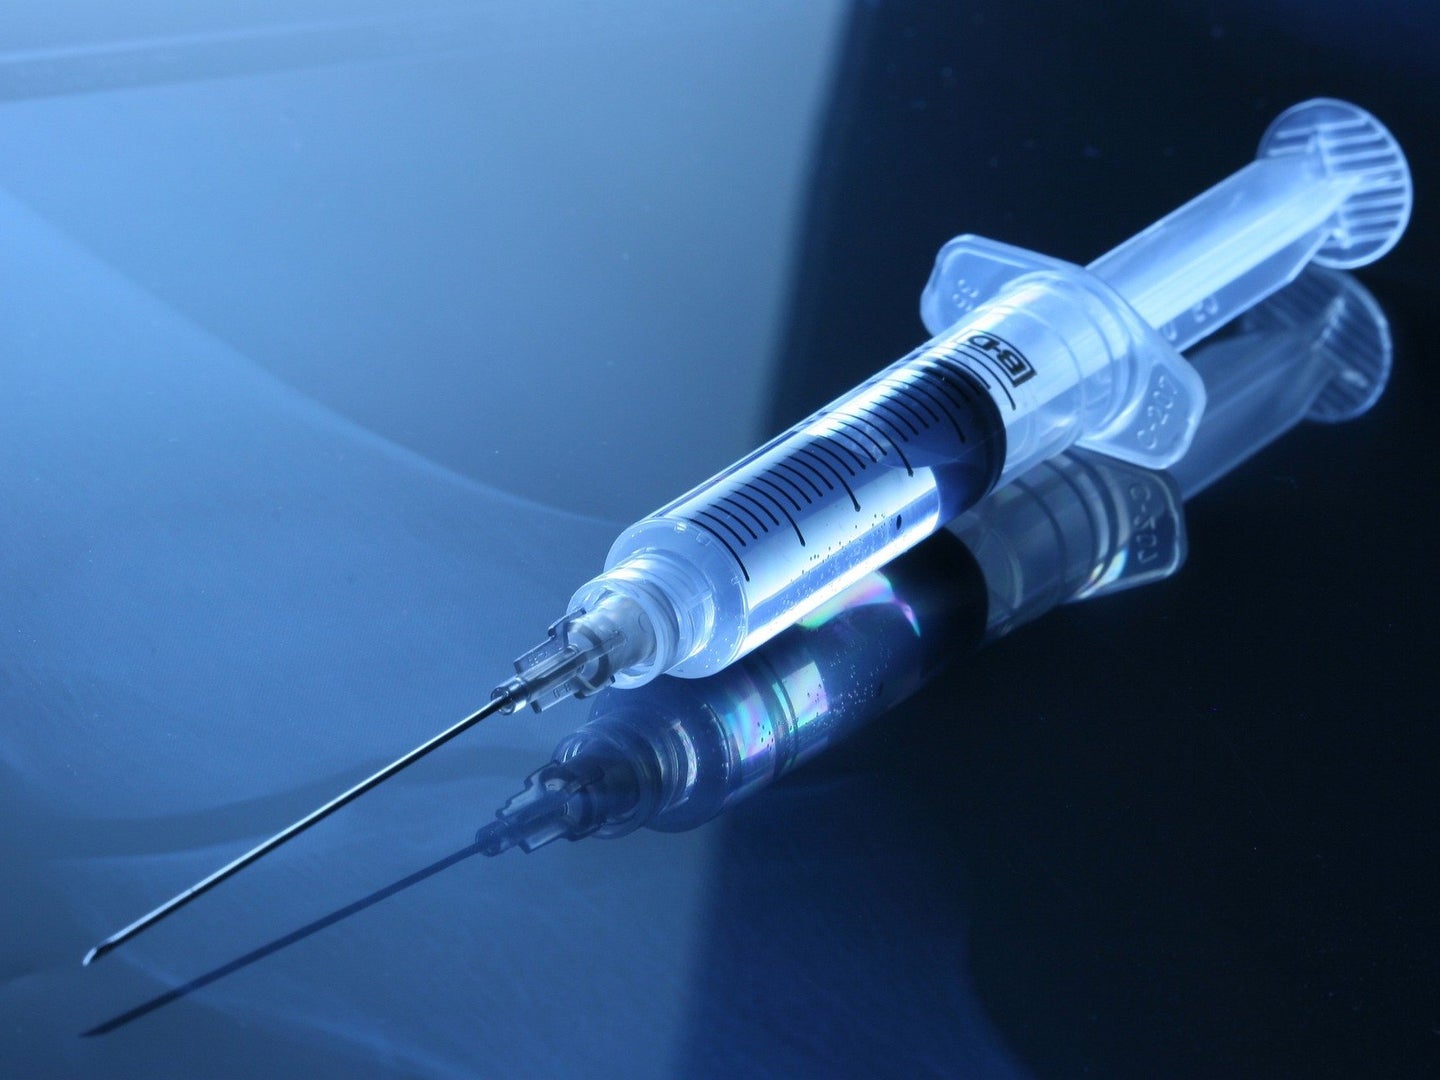 a medical syringe